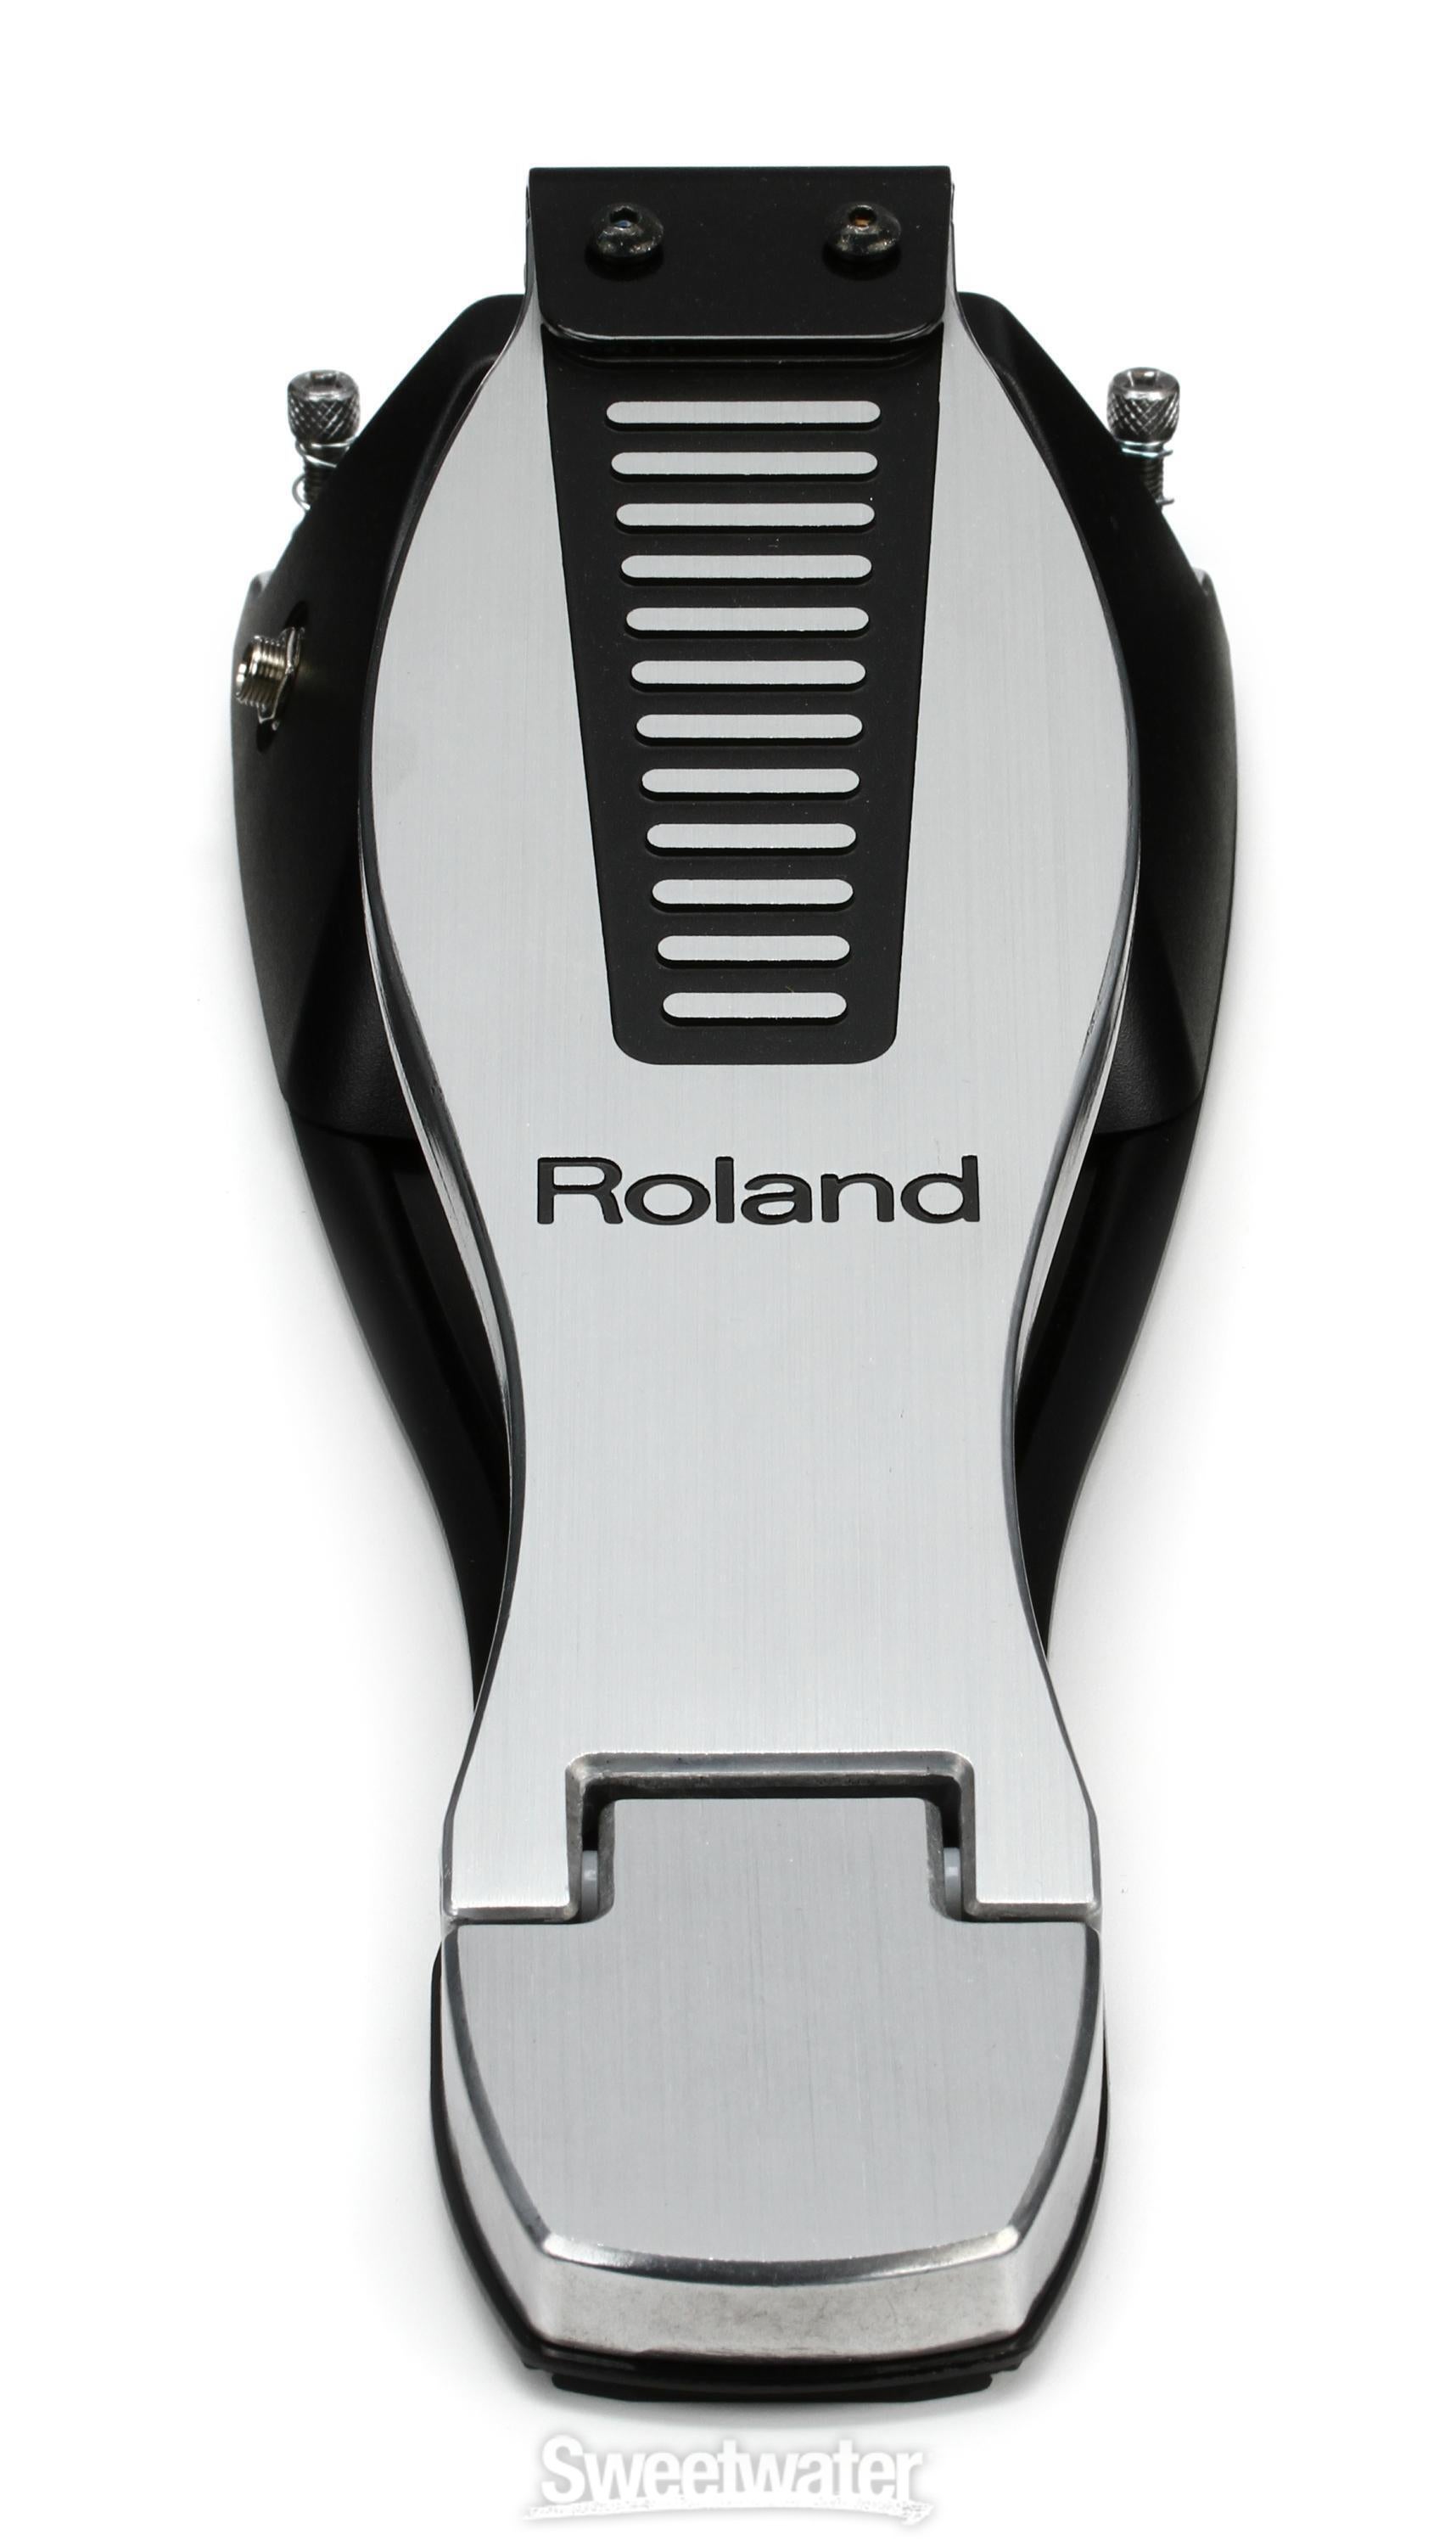 Roland FD-8 Hi-hat Control Pedal